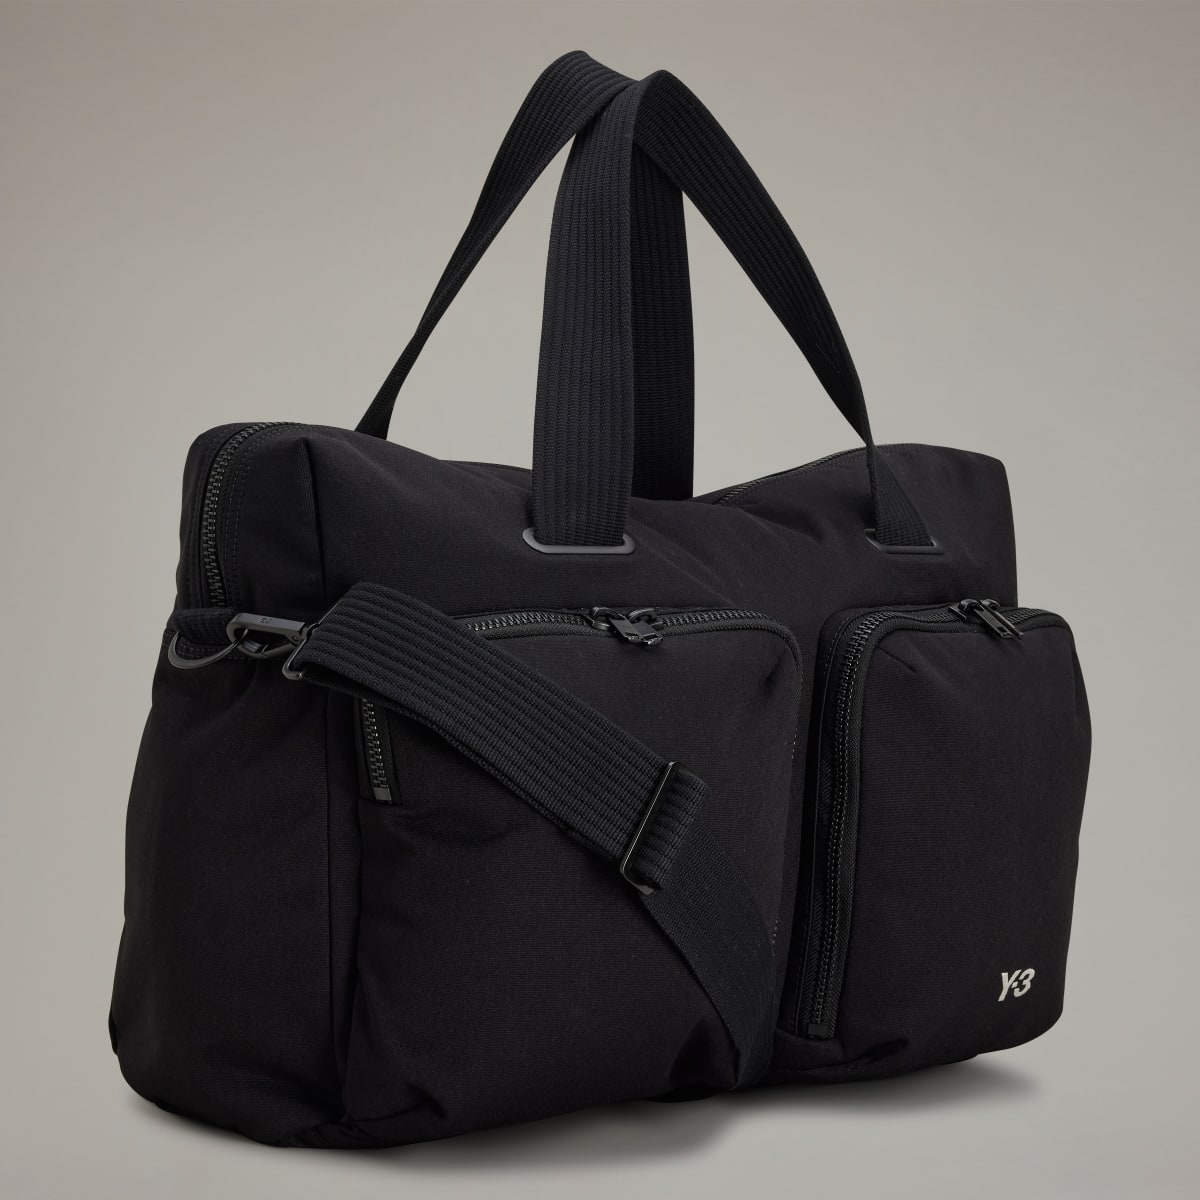 Adidas Y-3 Travel Bag. 4